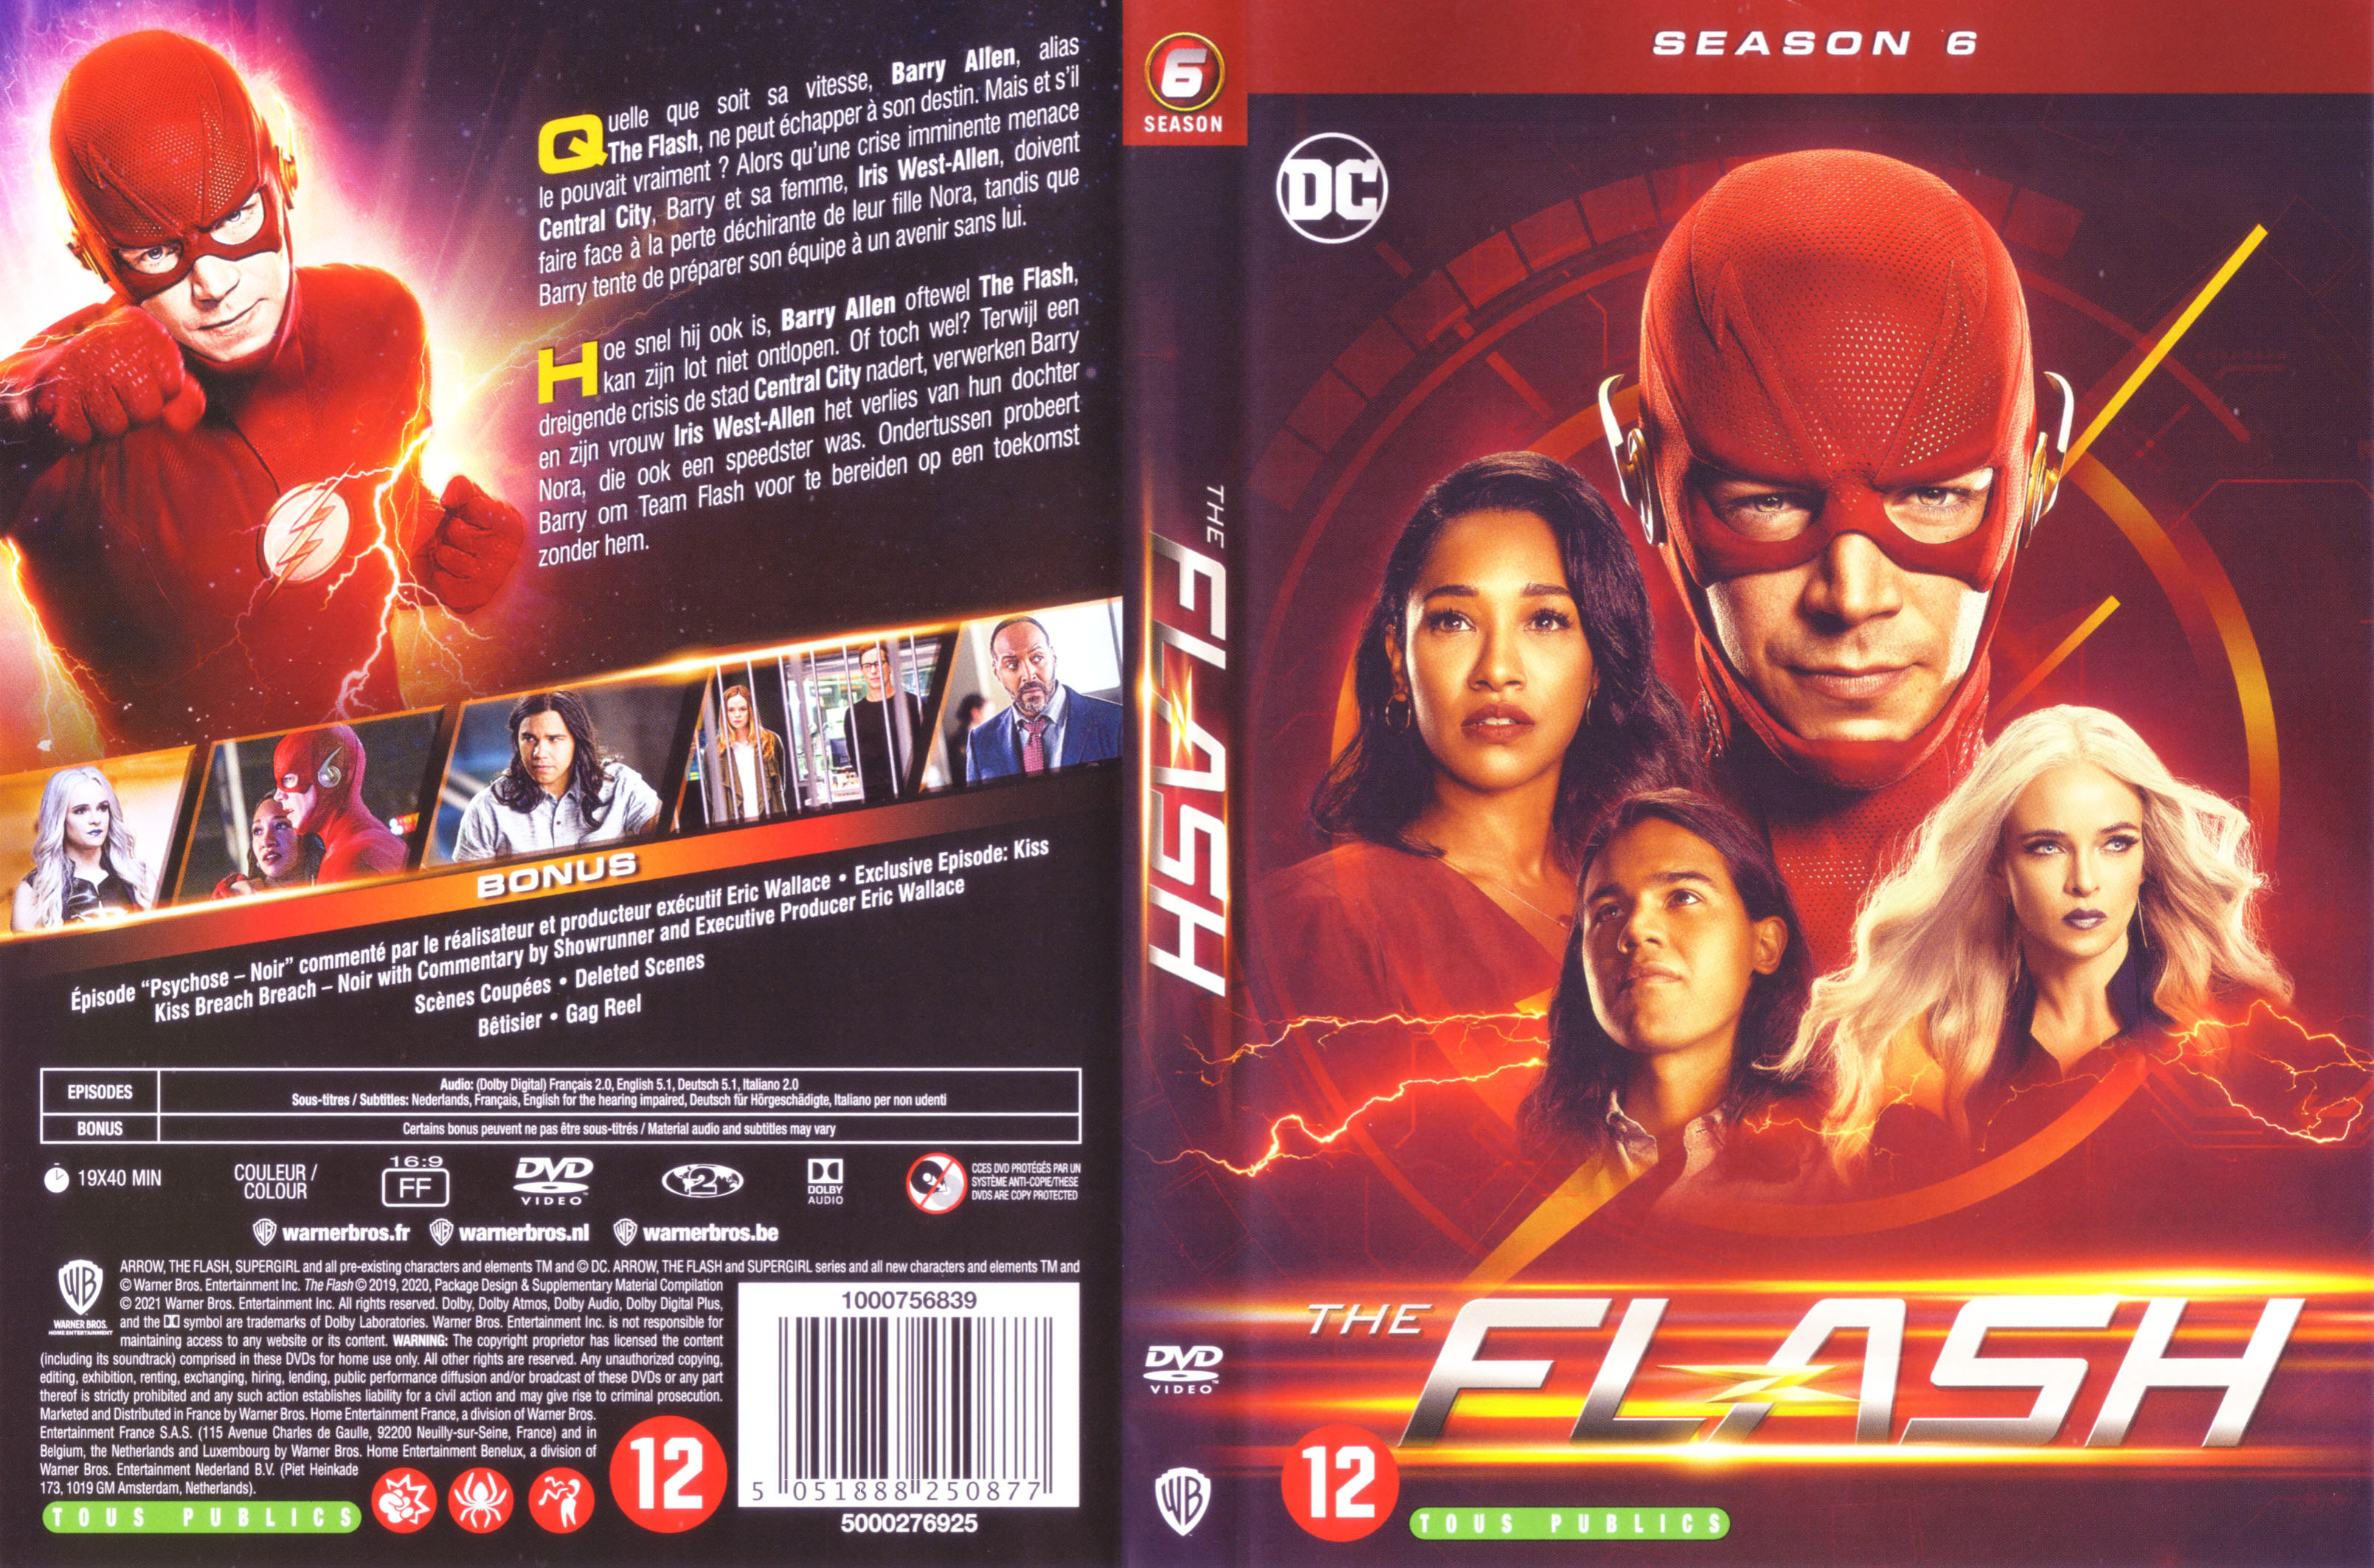 Jaquette DVD The flash Saison 6